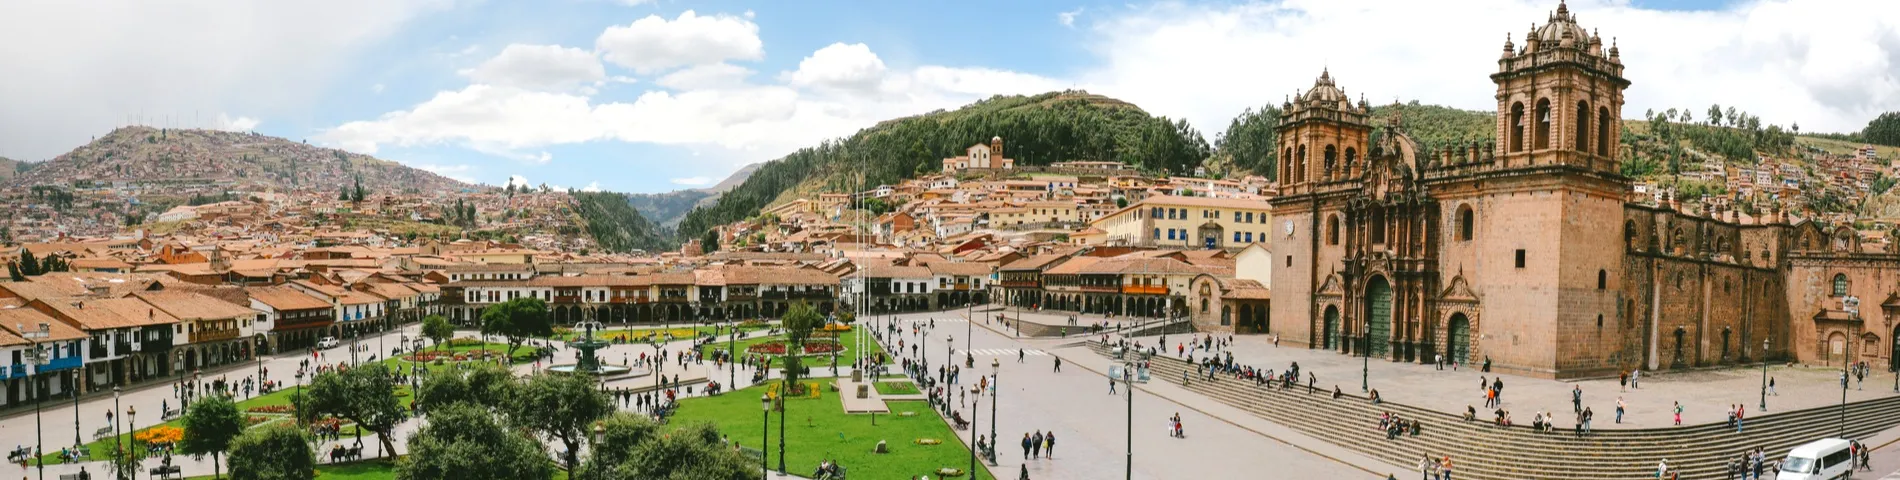 กุสโก (Cuzco) - หลักสูตรมาตรฐาน